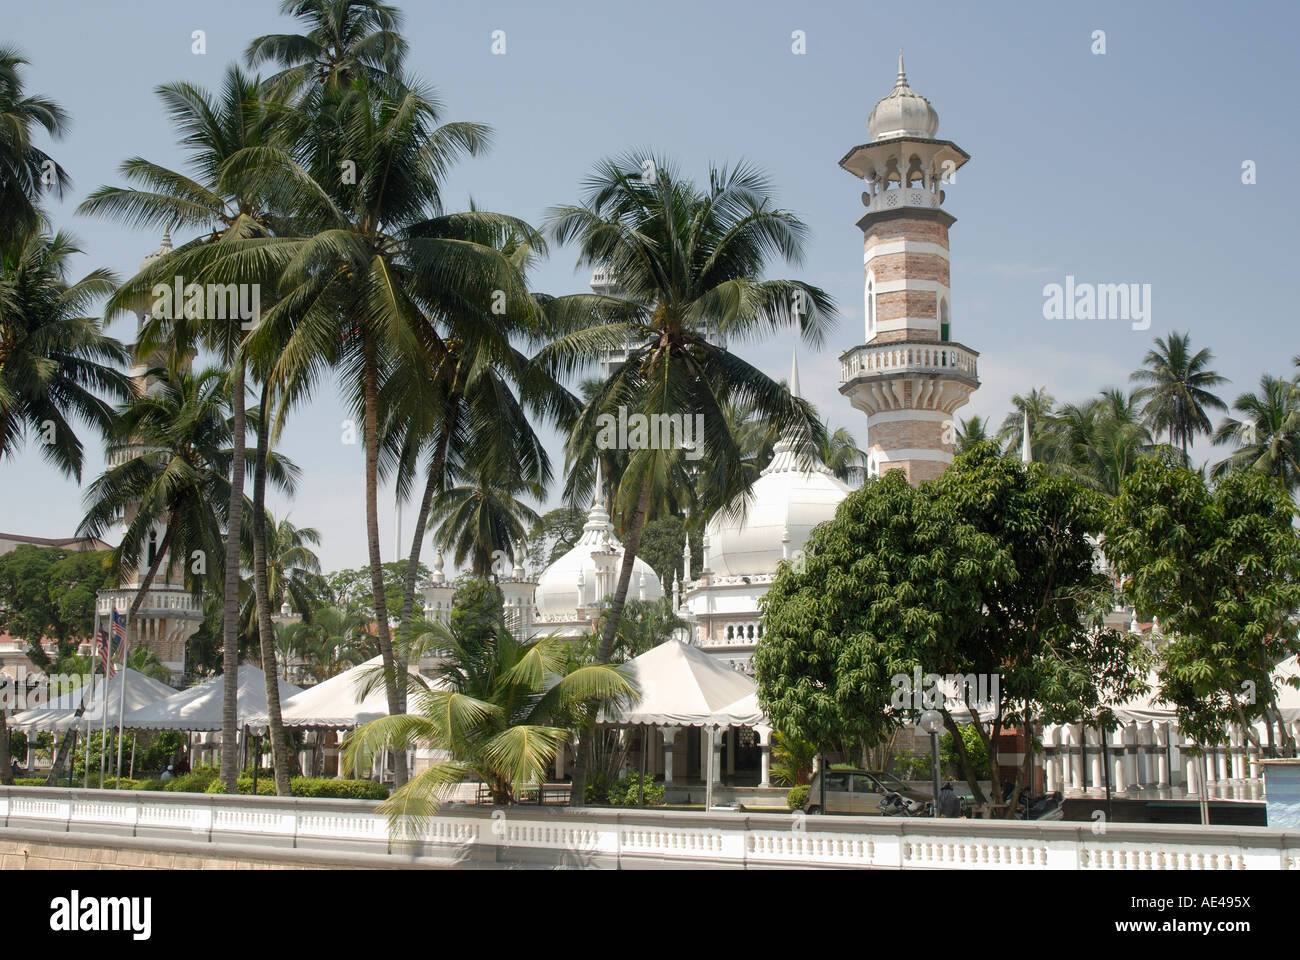 Mosquée Jamek, un bon exemple de l'architecture islamique du nord de l'Inde, Kuala Lumpur, Malaisie, Asie du Sud, Asie Banque D'Images